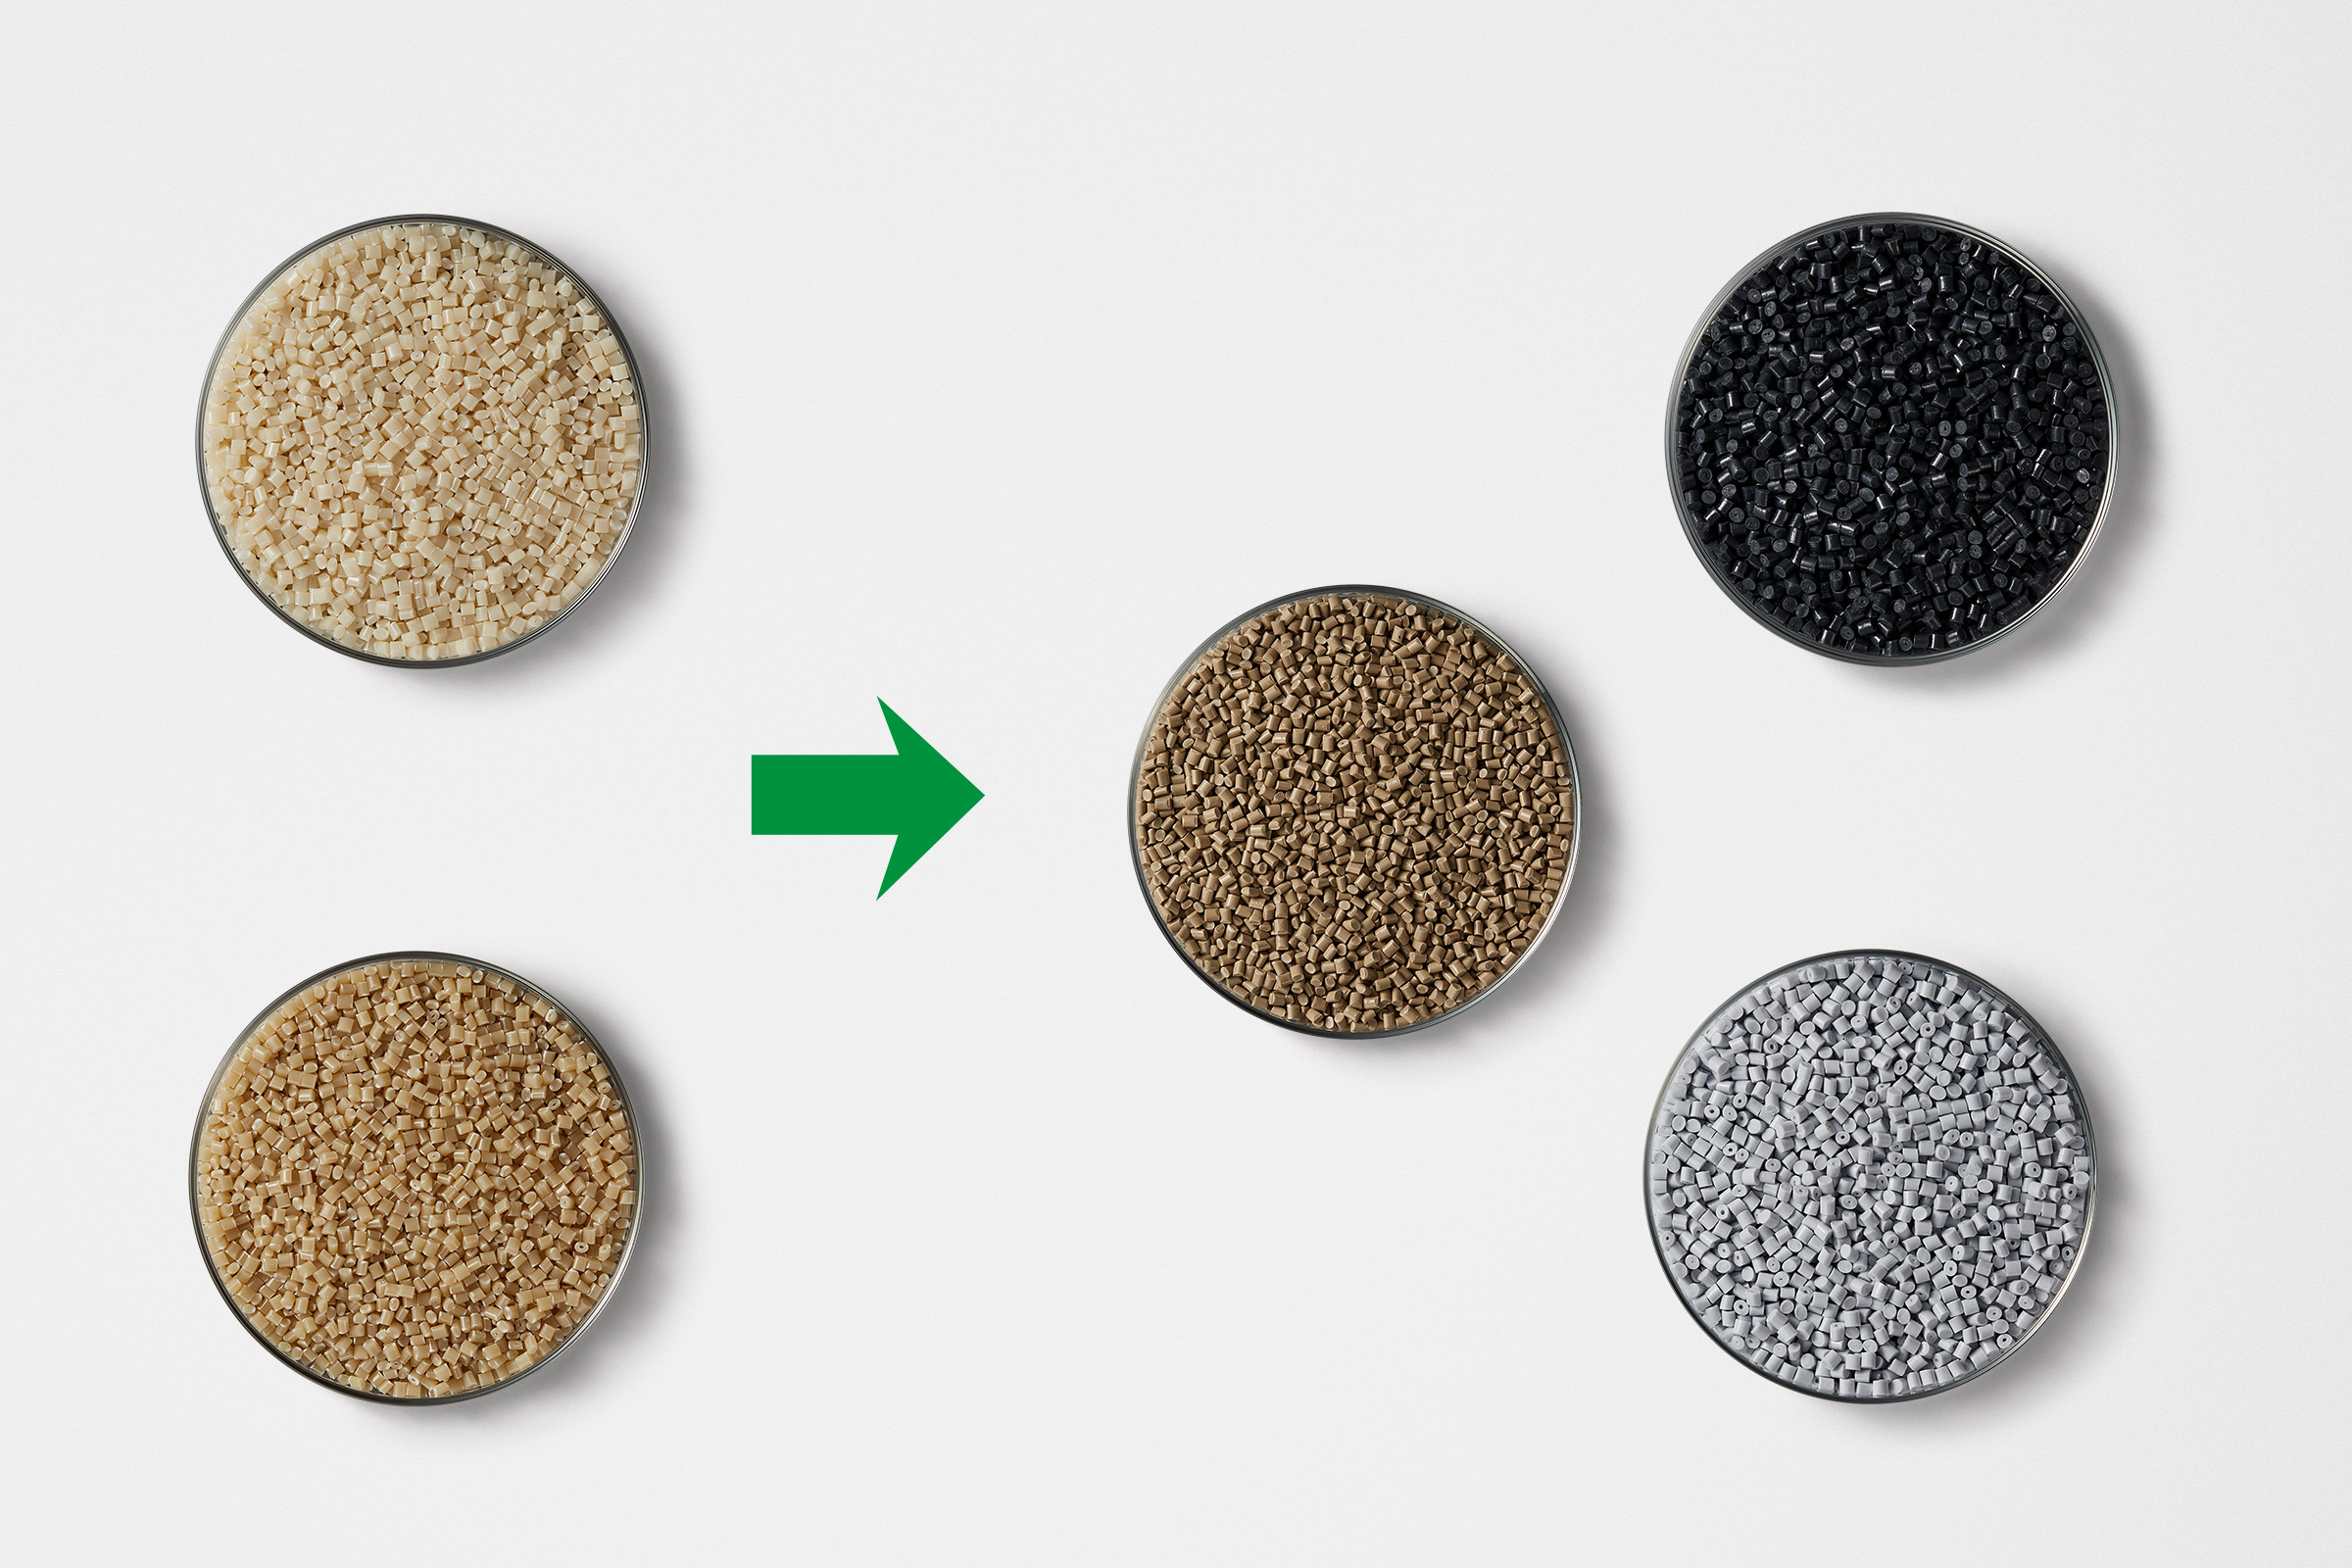 未染色的塑料颗粒(左)和已染色的塑料颗粒(右) 提供更多不同的可选产品颜色